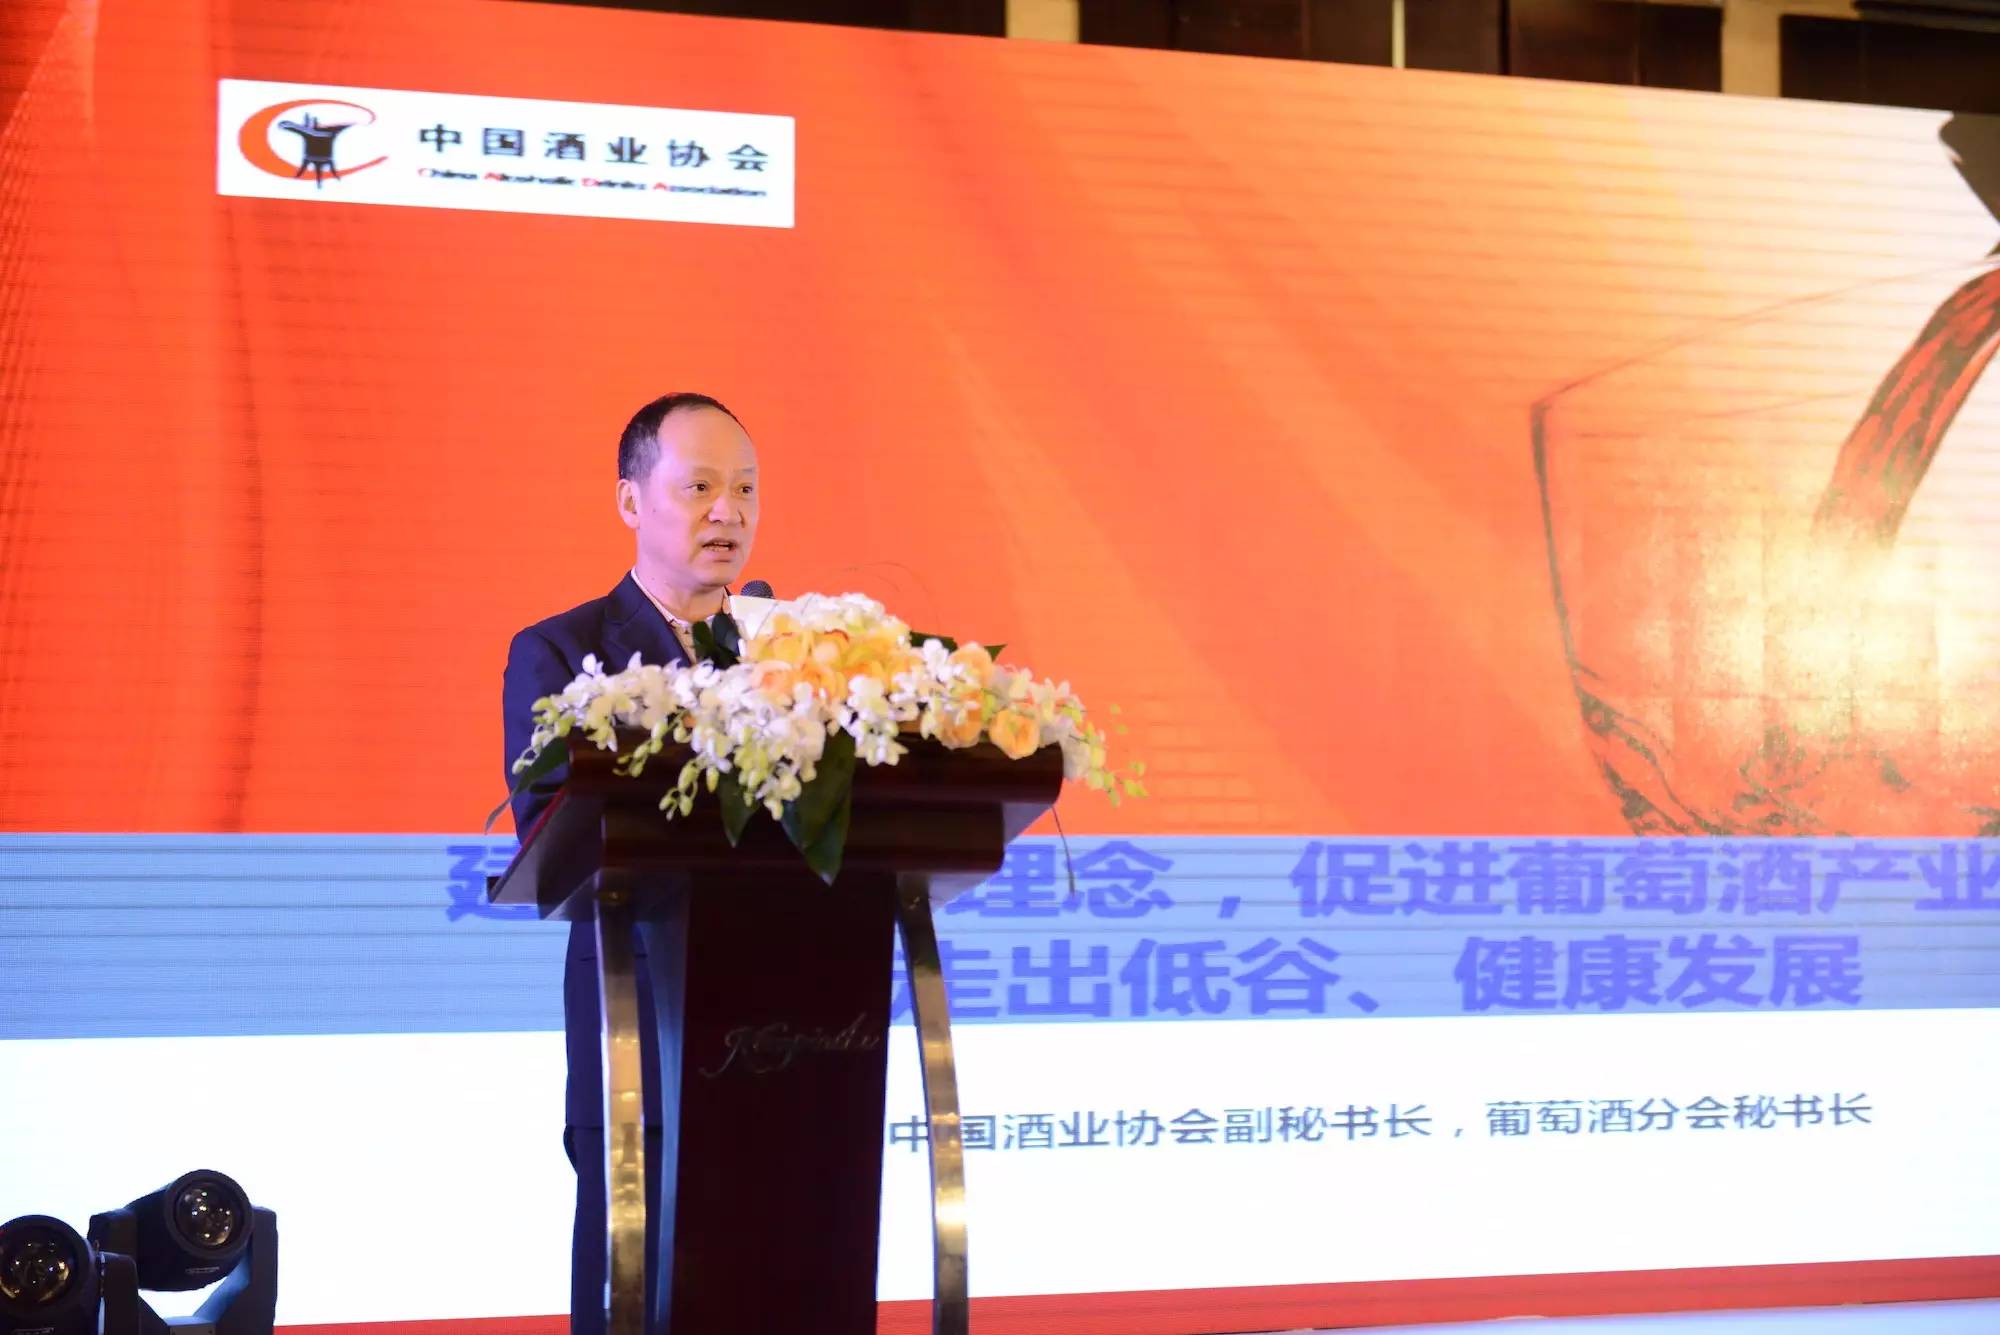 中国酒业协会副秘书长、葡萄酒分会秘书长王祖明在峰会论坛上发言